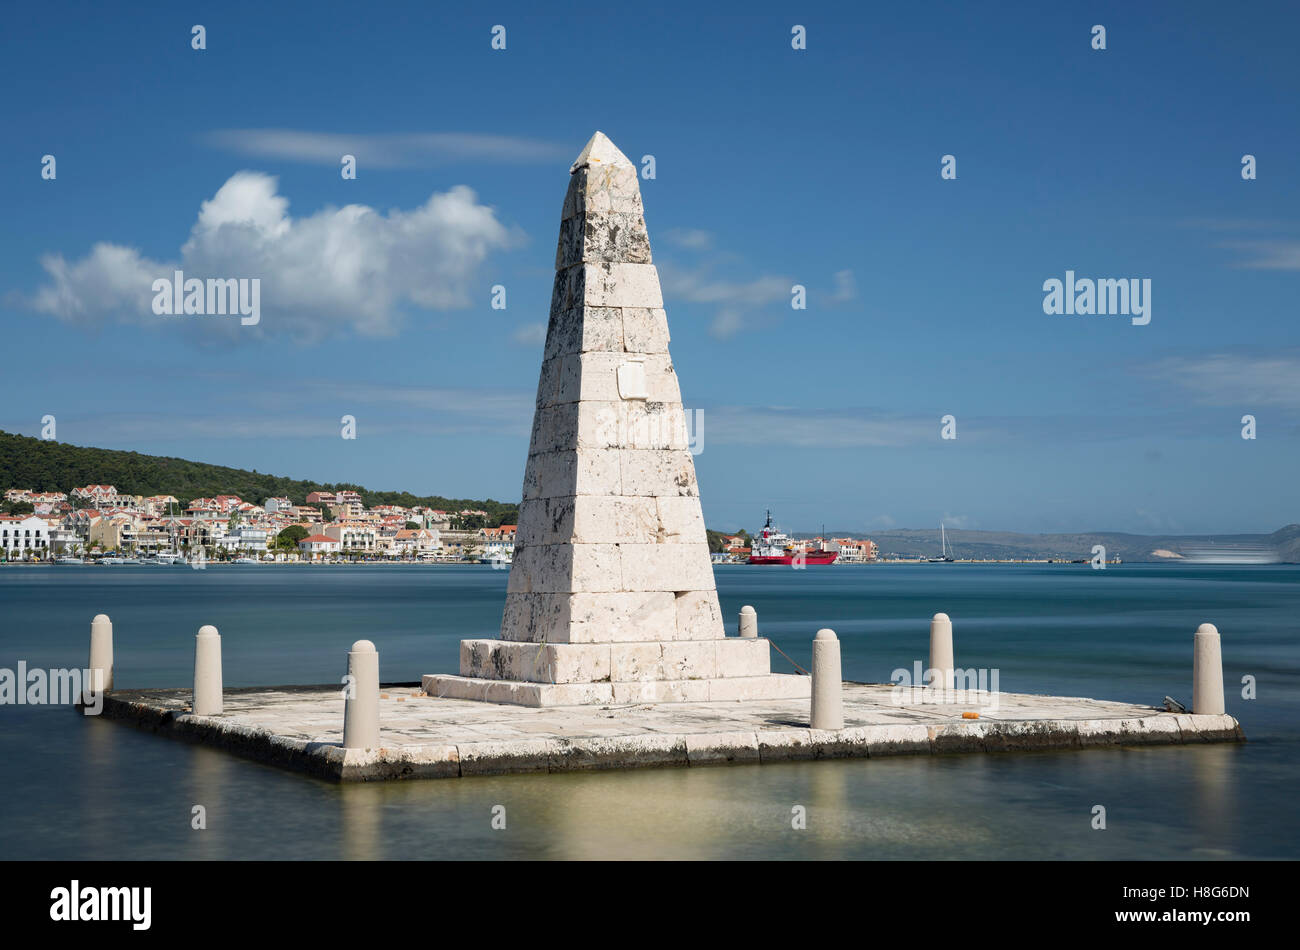 Un monument pour l'administration britannique se trouve dans la baie d'Argostoli, Kefalonia. Banque D'Images